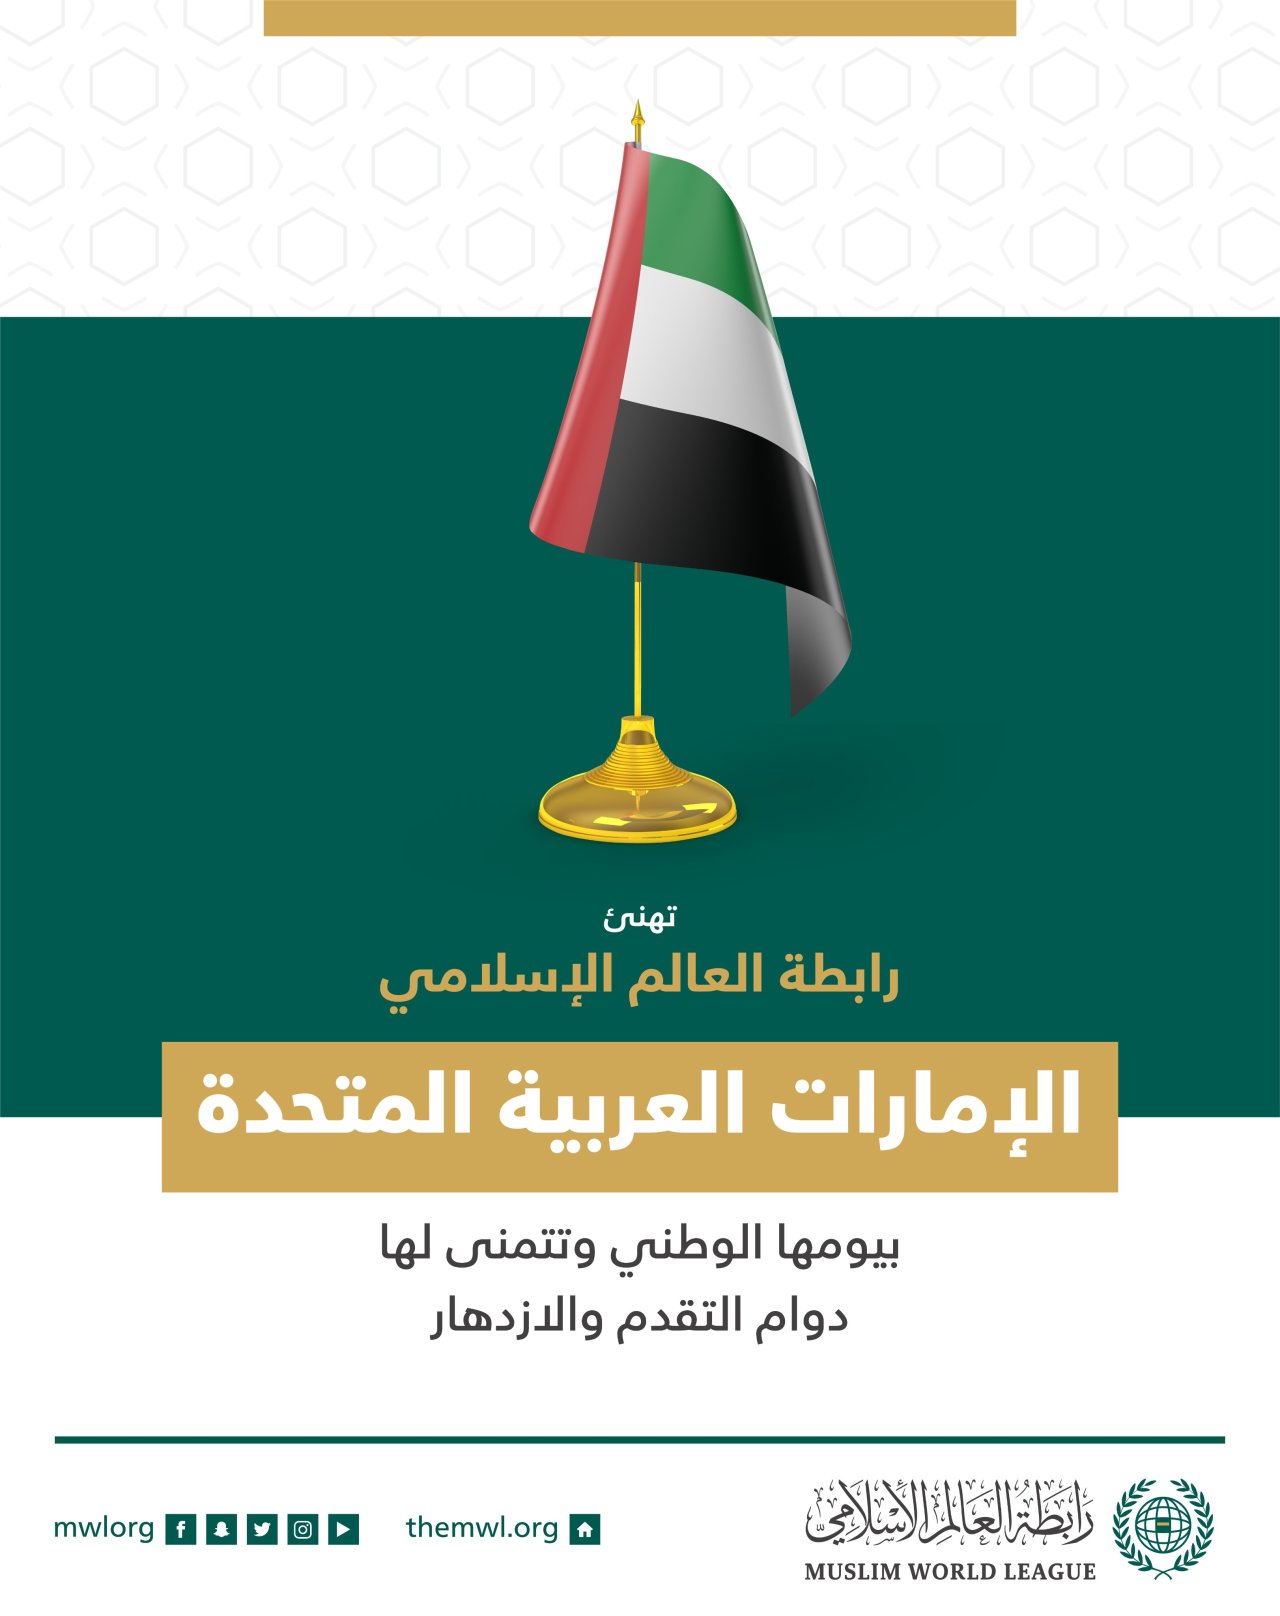 تهنئ رابطة العالم الإسلامي‬⁩ دولة الإمارات‬⁩ العربية المتحدة بذكرى يومها الوطني.